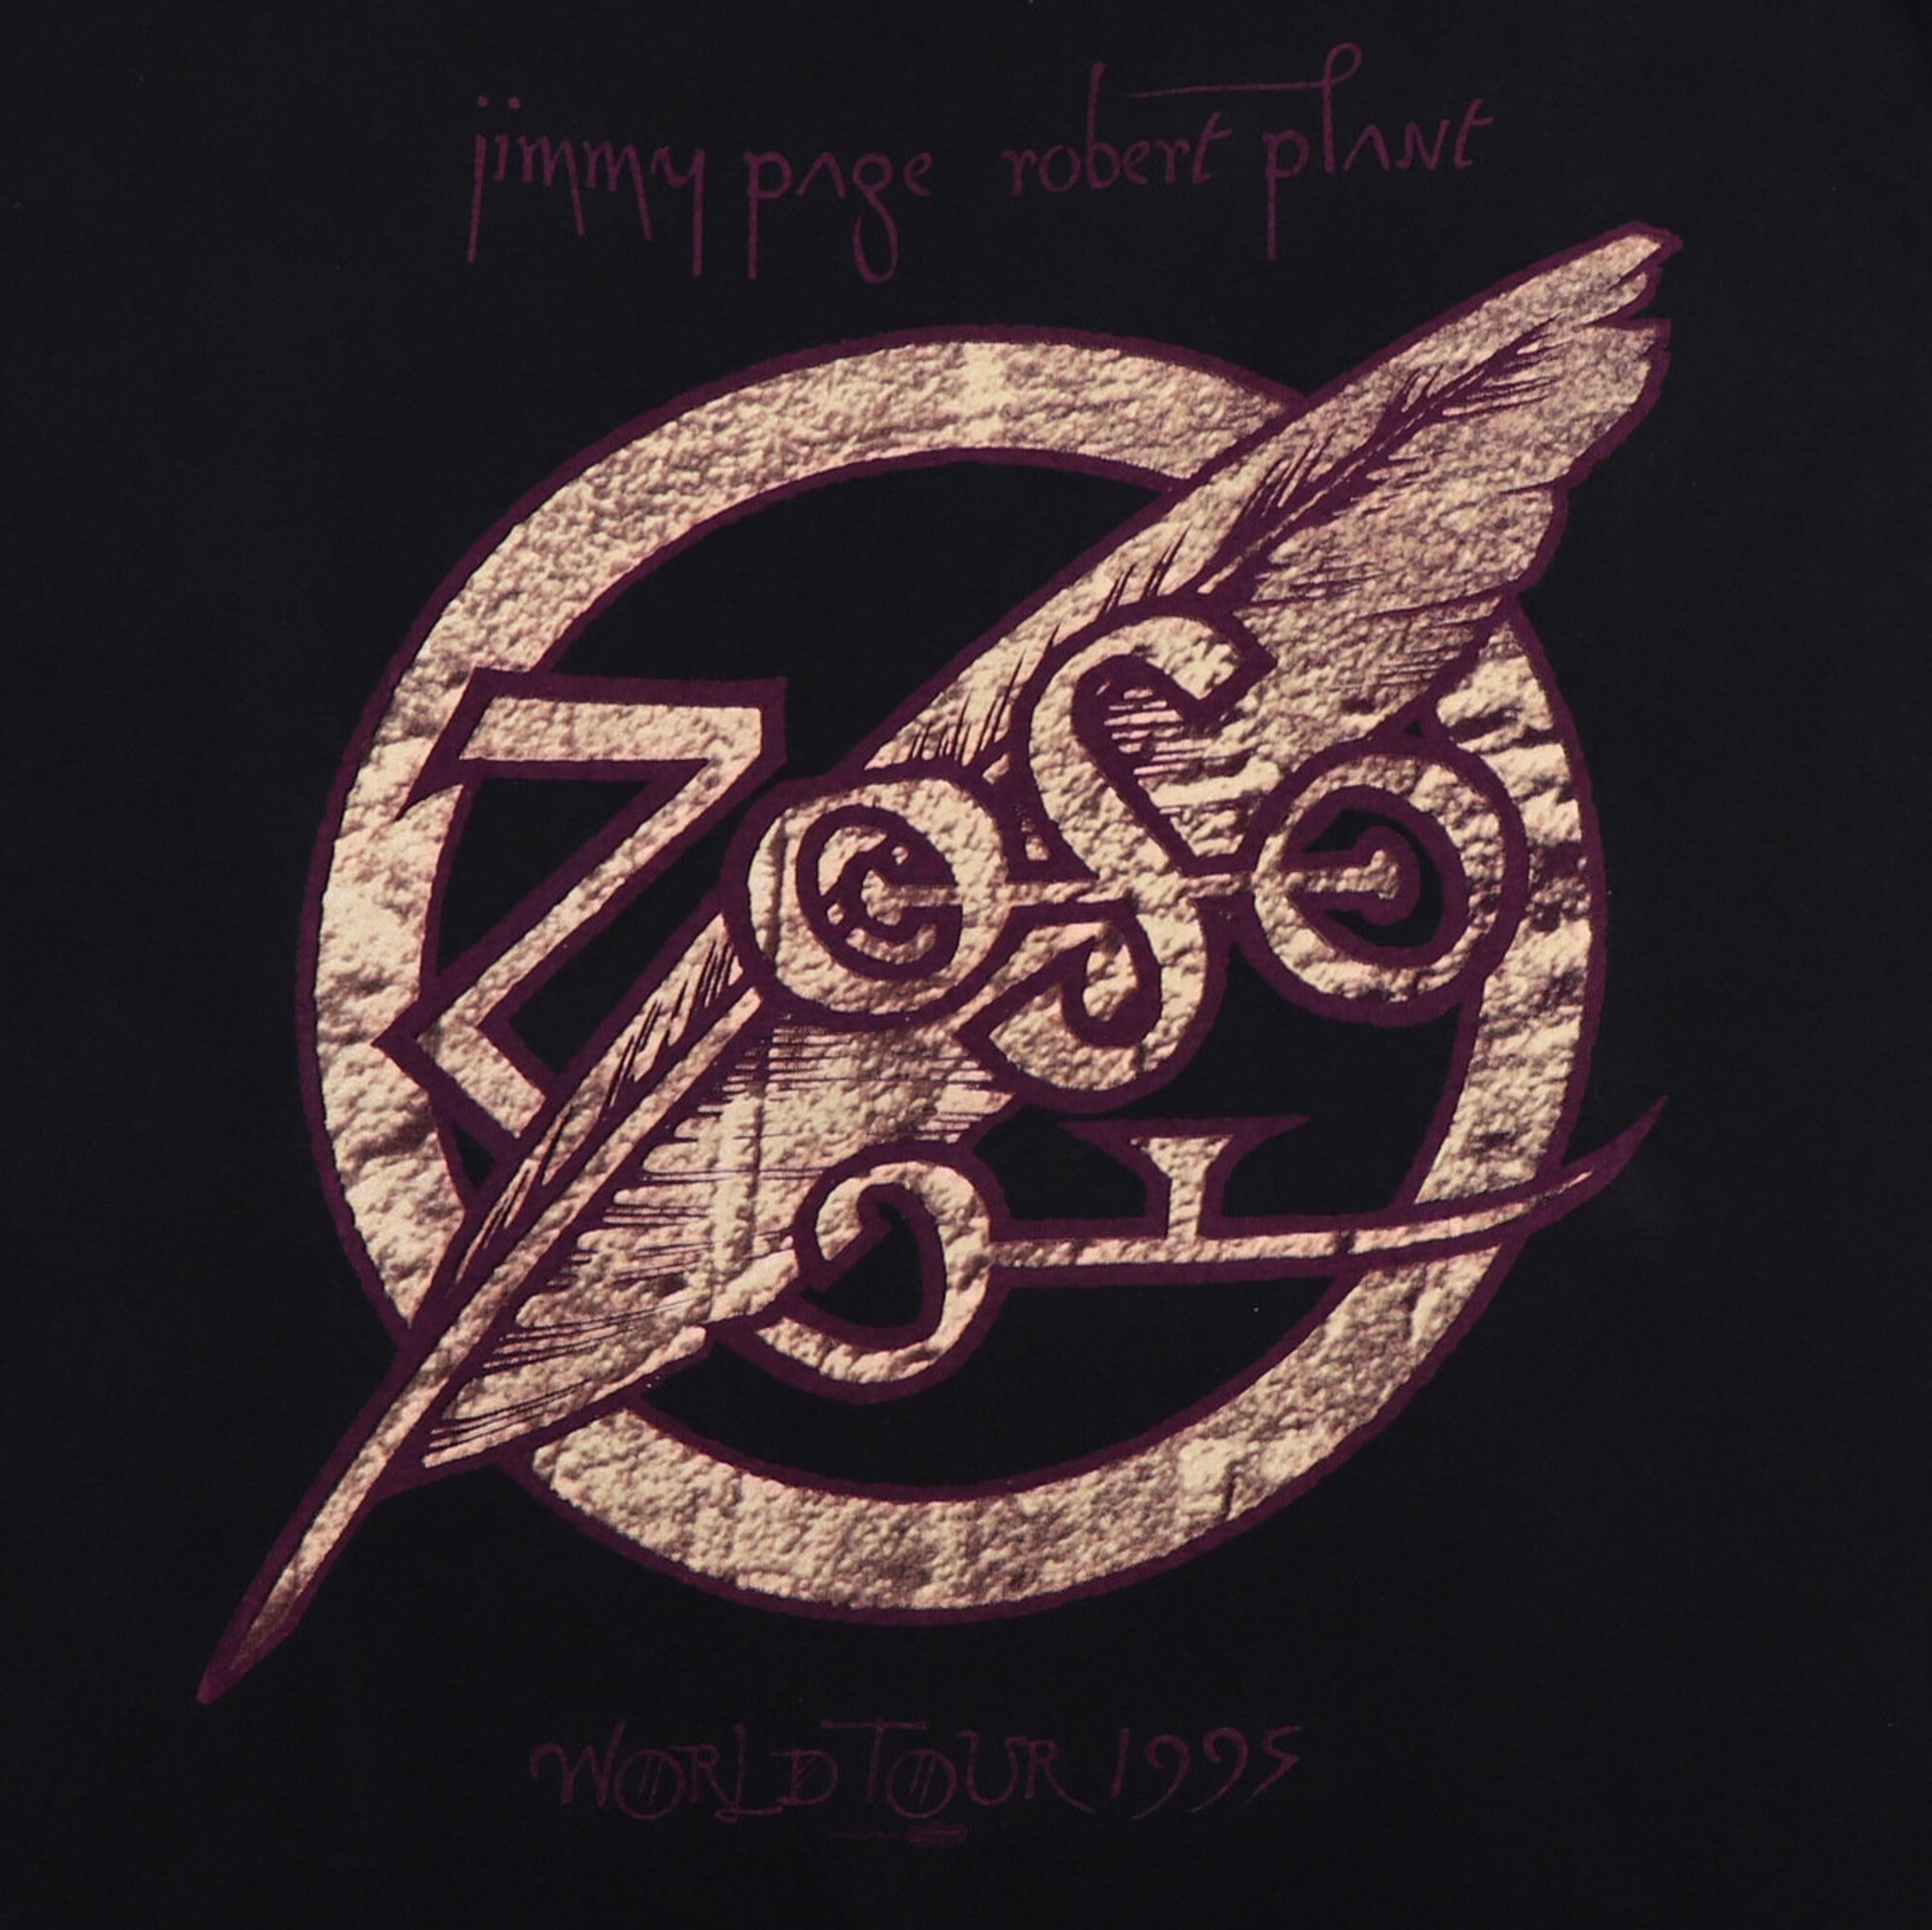 vintage 1995 Jimmy Page Robert Plant Zoso Tour Shirt